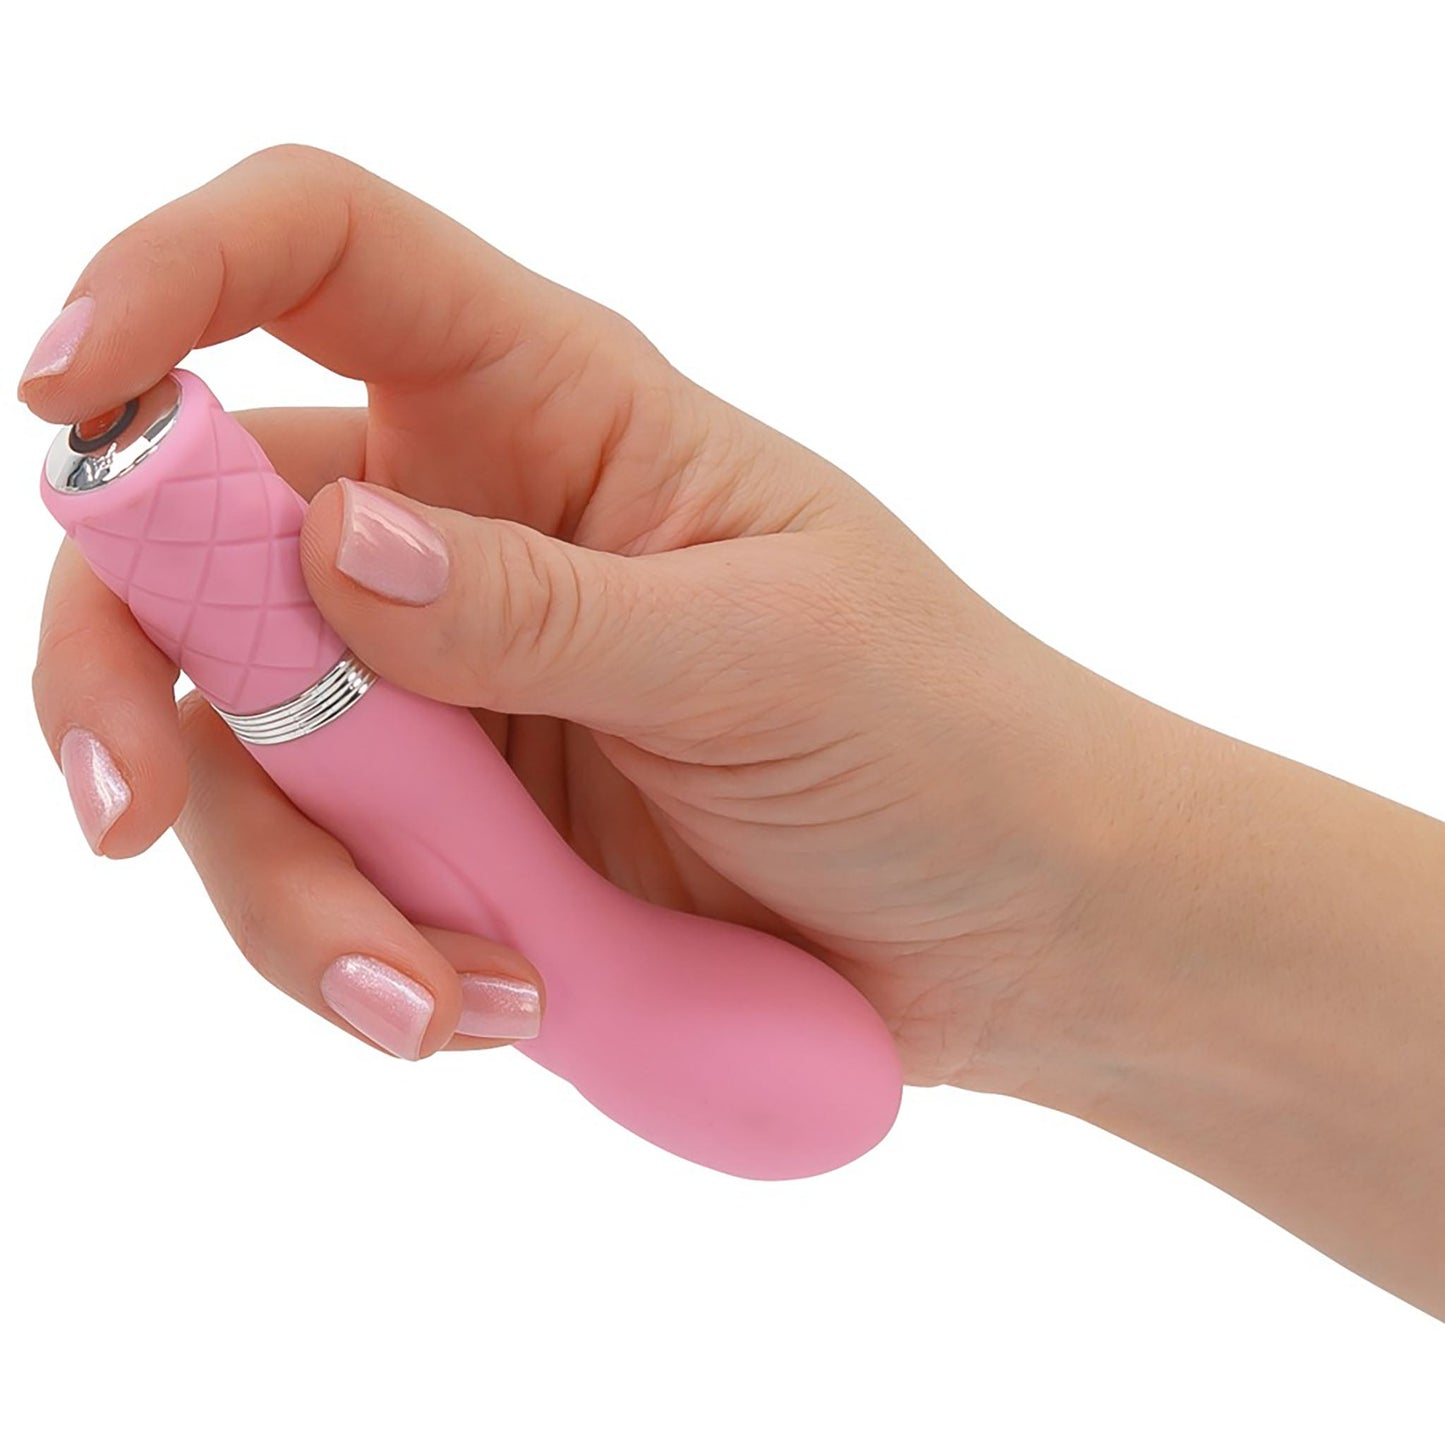 Racy Luxurius Mini Massager von Pillow Talk, ein G-Punkt Vibrator in rosa, von einer Hand bedient